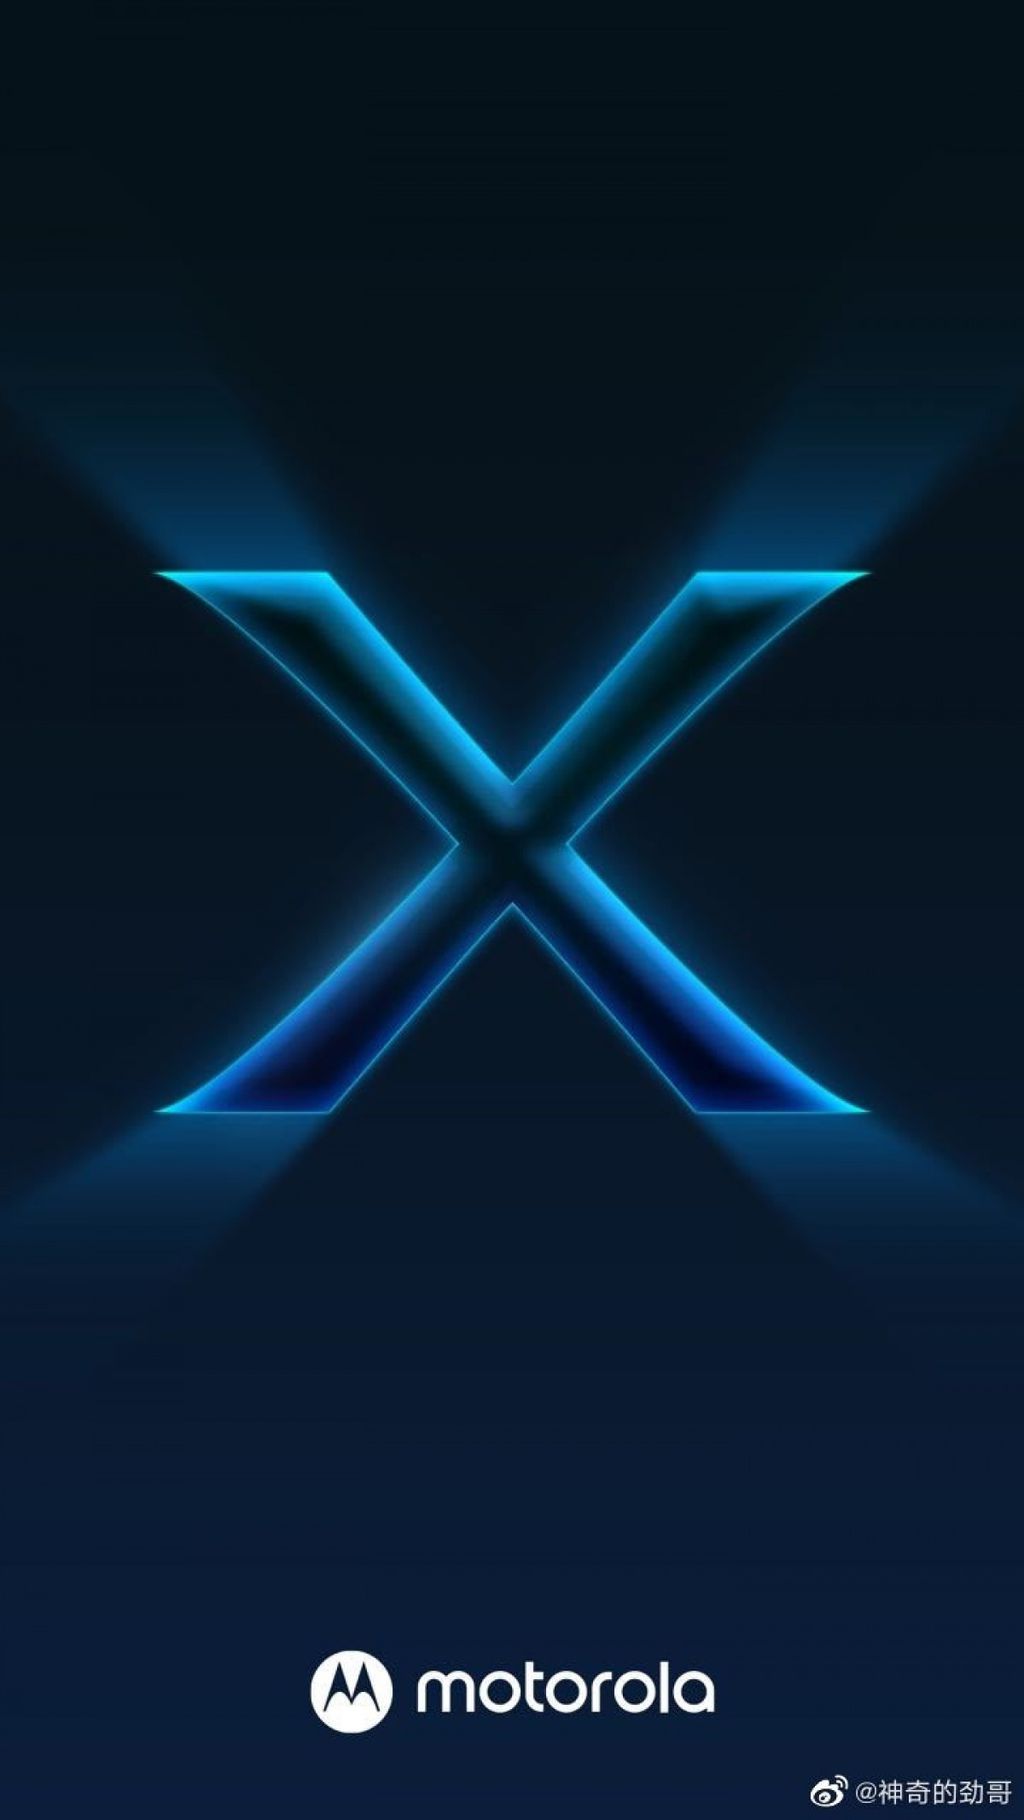 O Edge X foi confirmado como o próximo flagship da Motorola, que promete entregar um aparelho "infinitamente poderoso" e "digno das expectativas" (Imagem: Motorola/Weibo)